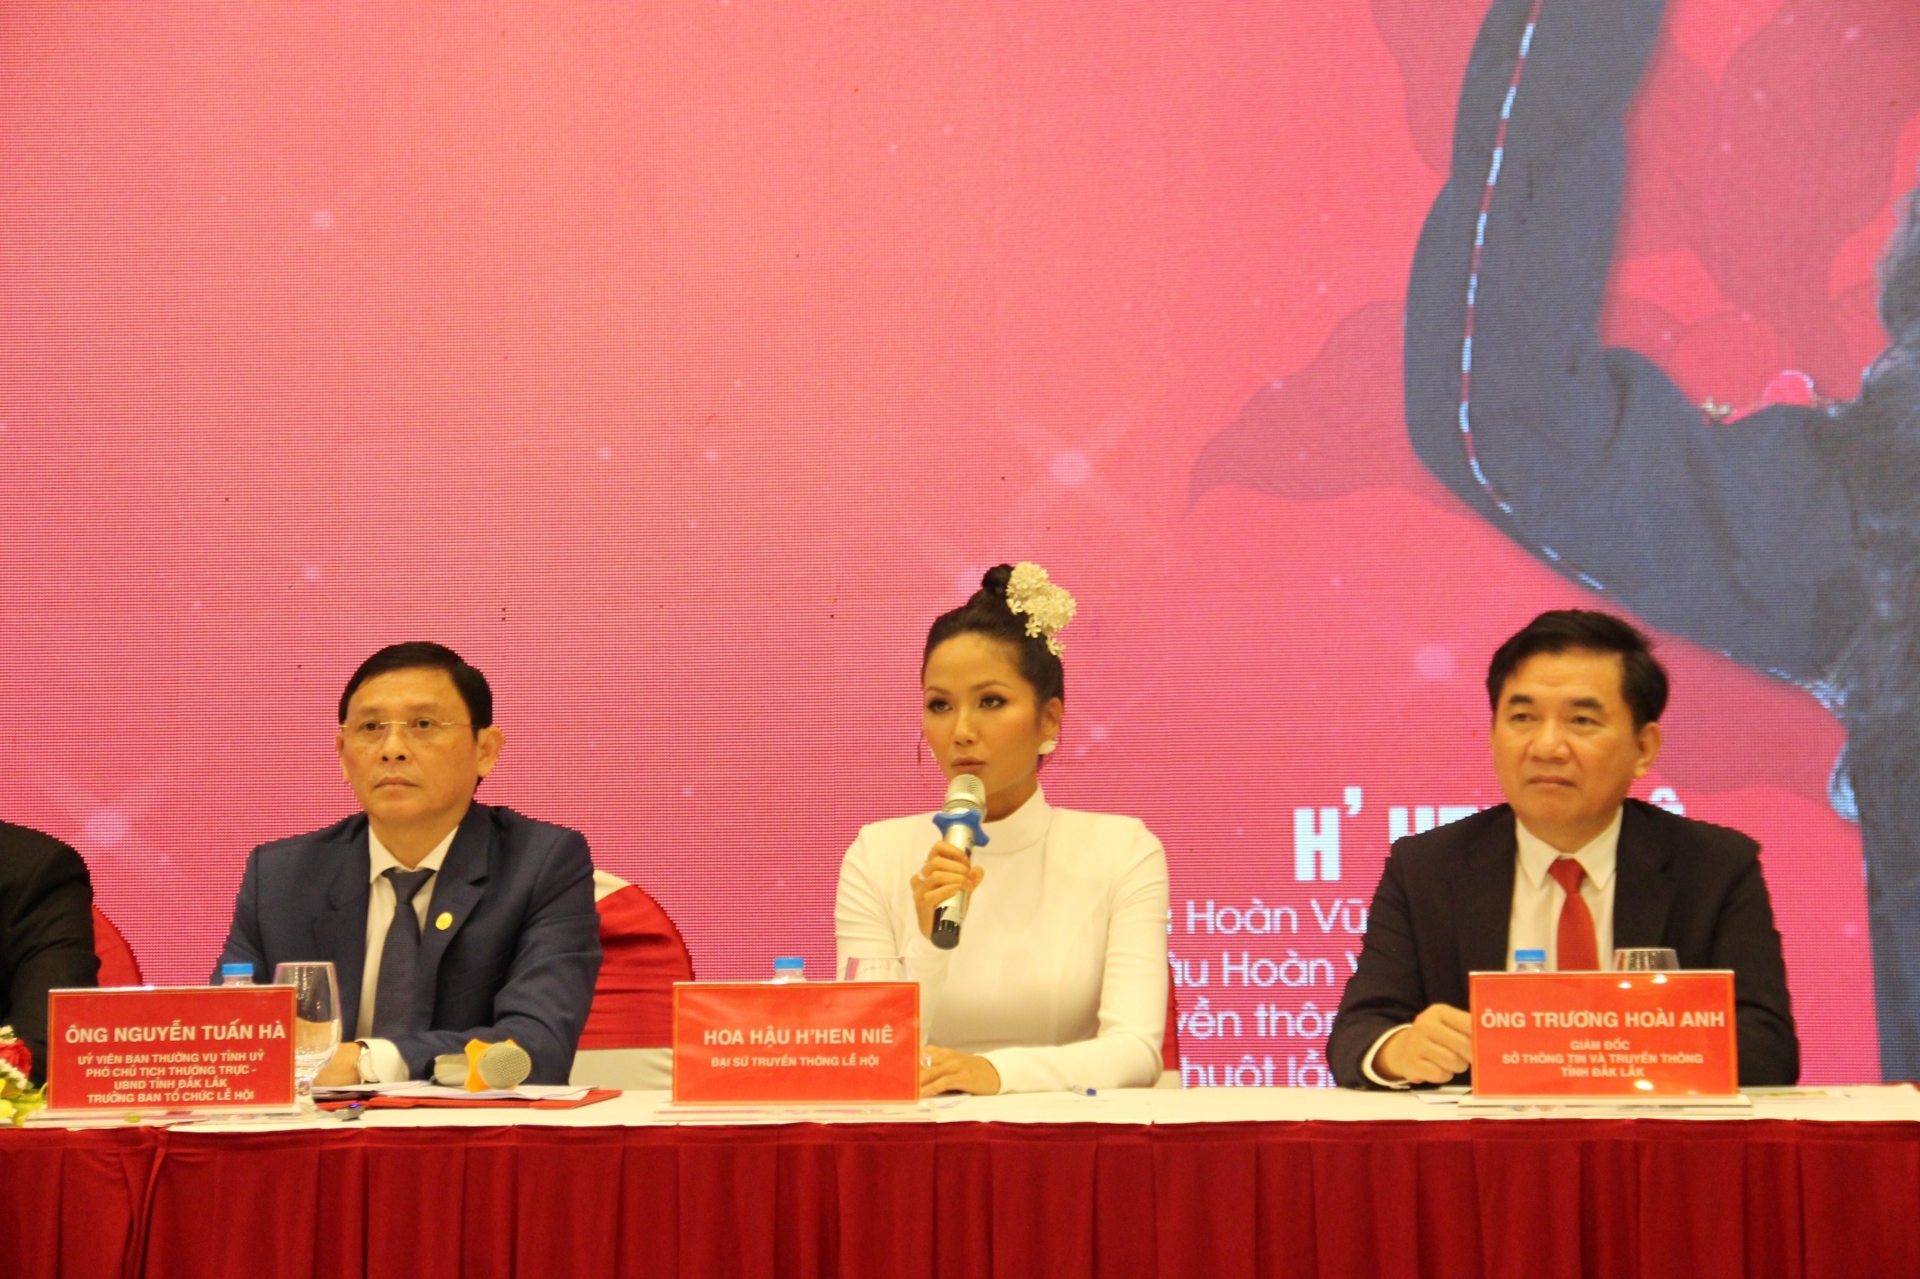 Hoa hậu Hoàn vũ Việt Nam 2017 H’Hen Niê - Đại sứ truyền thông của Lễ hội trả lời câu hỏi của phóng viên.